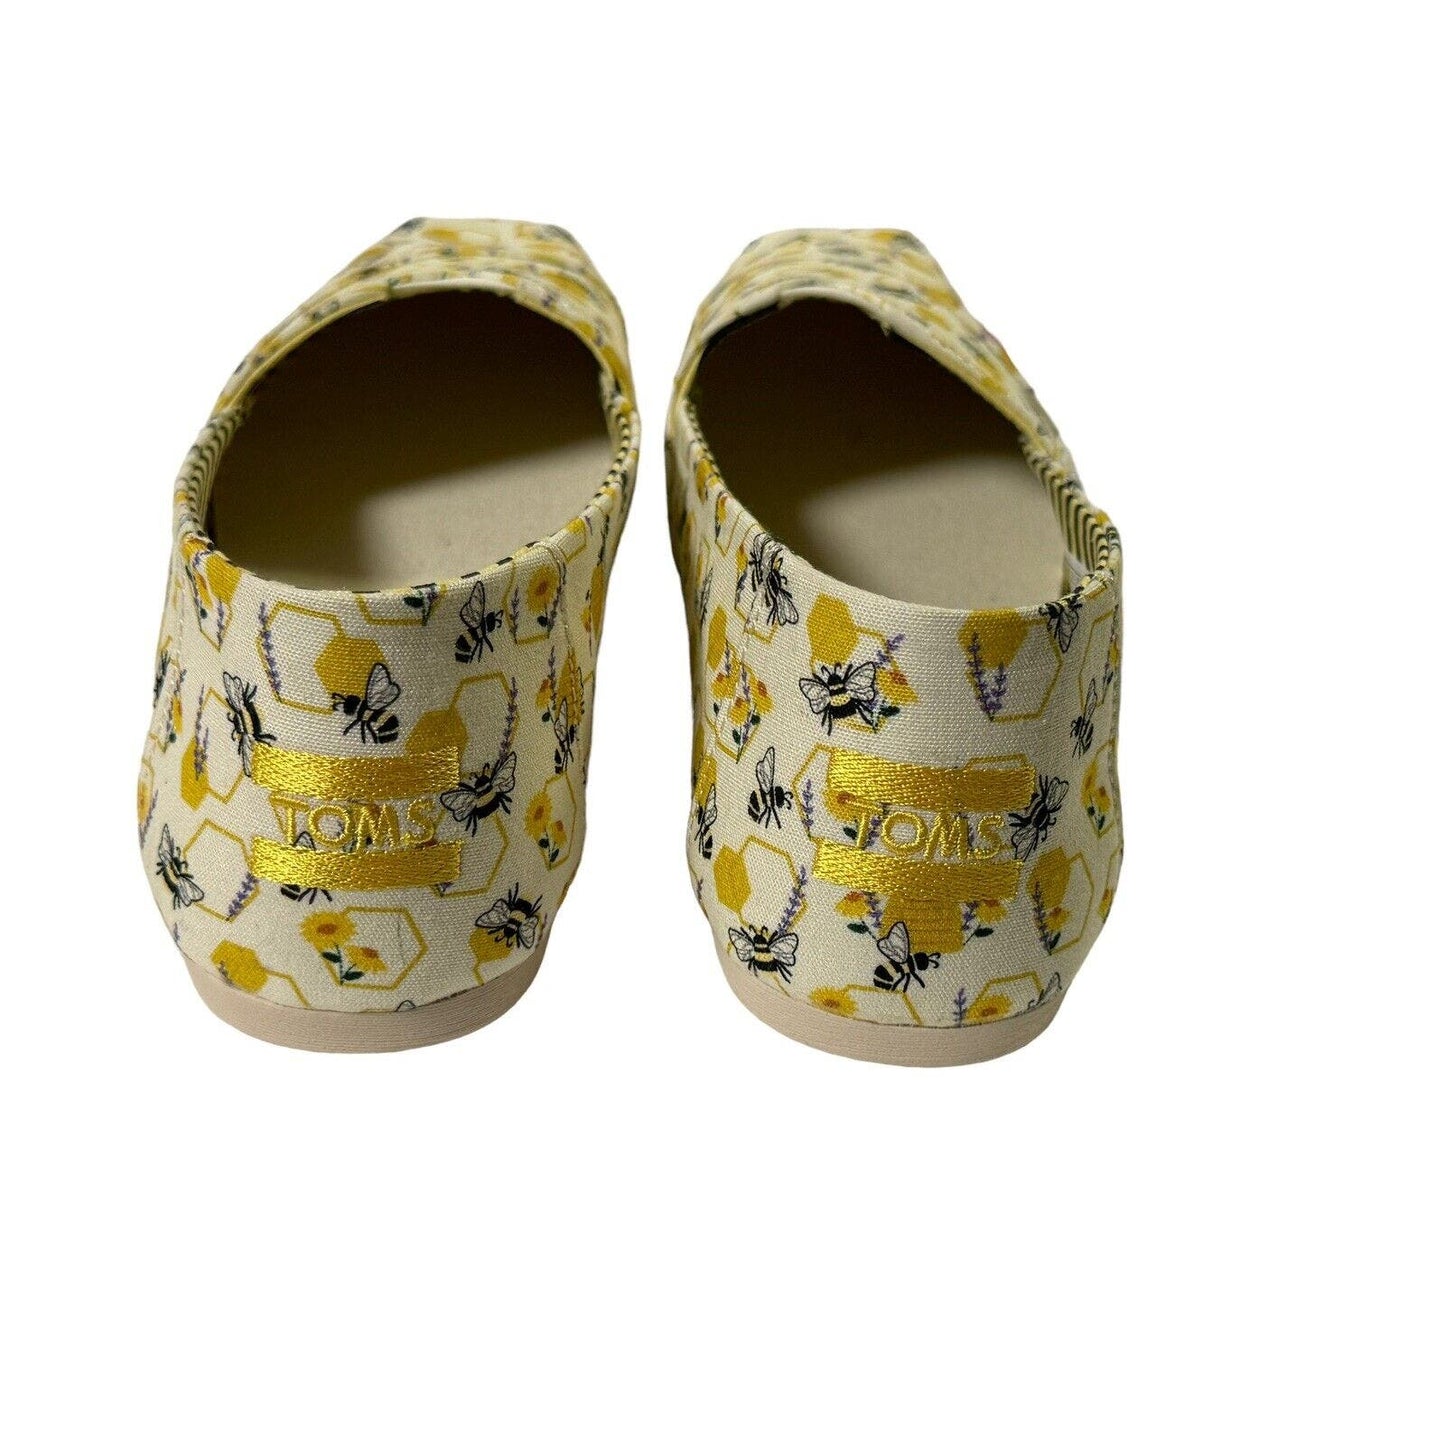 Toms Womans Alpargata Bees Floral Print Slip On Shoes Size 9